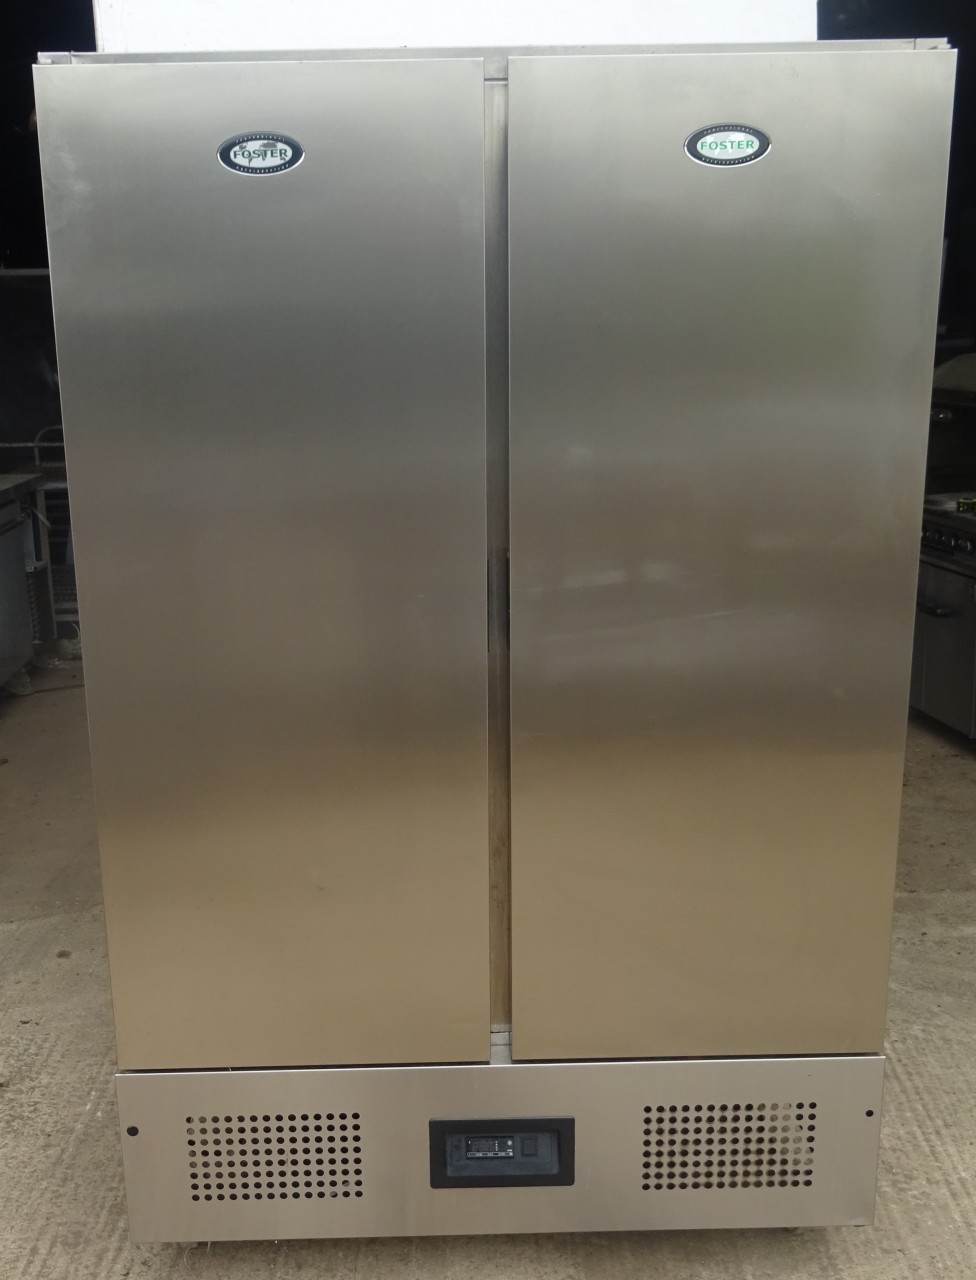 FOSTER  Double Door Freezer – Bottom compressor